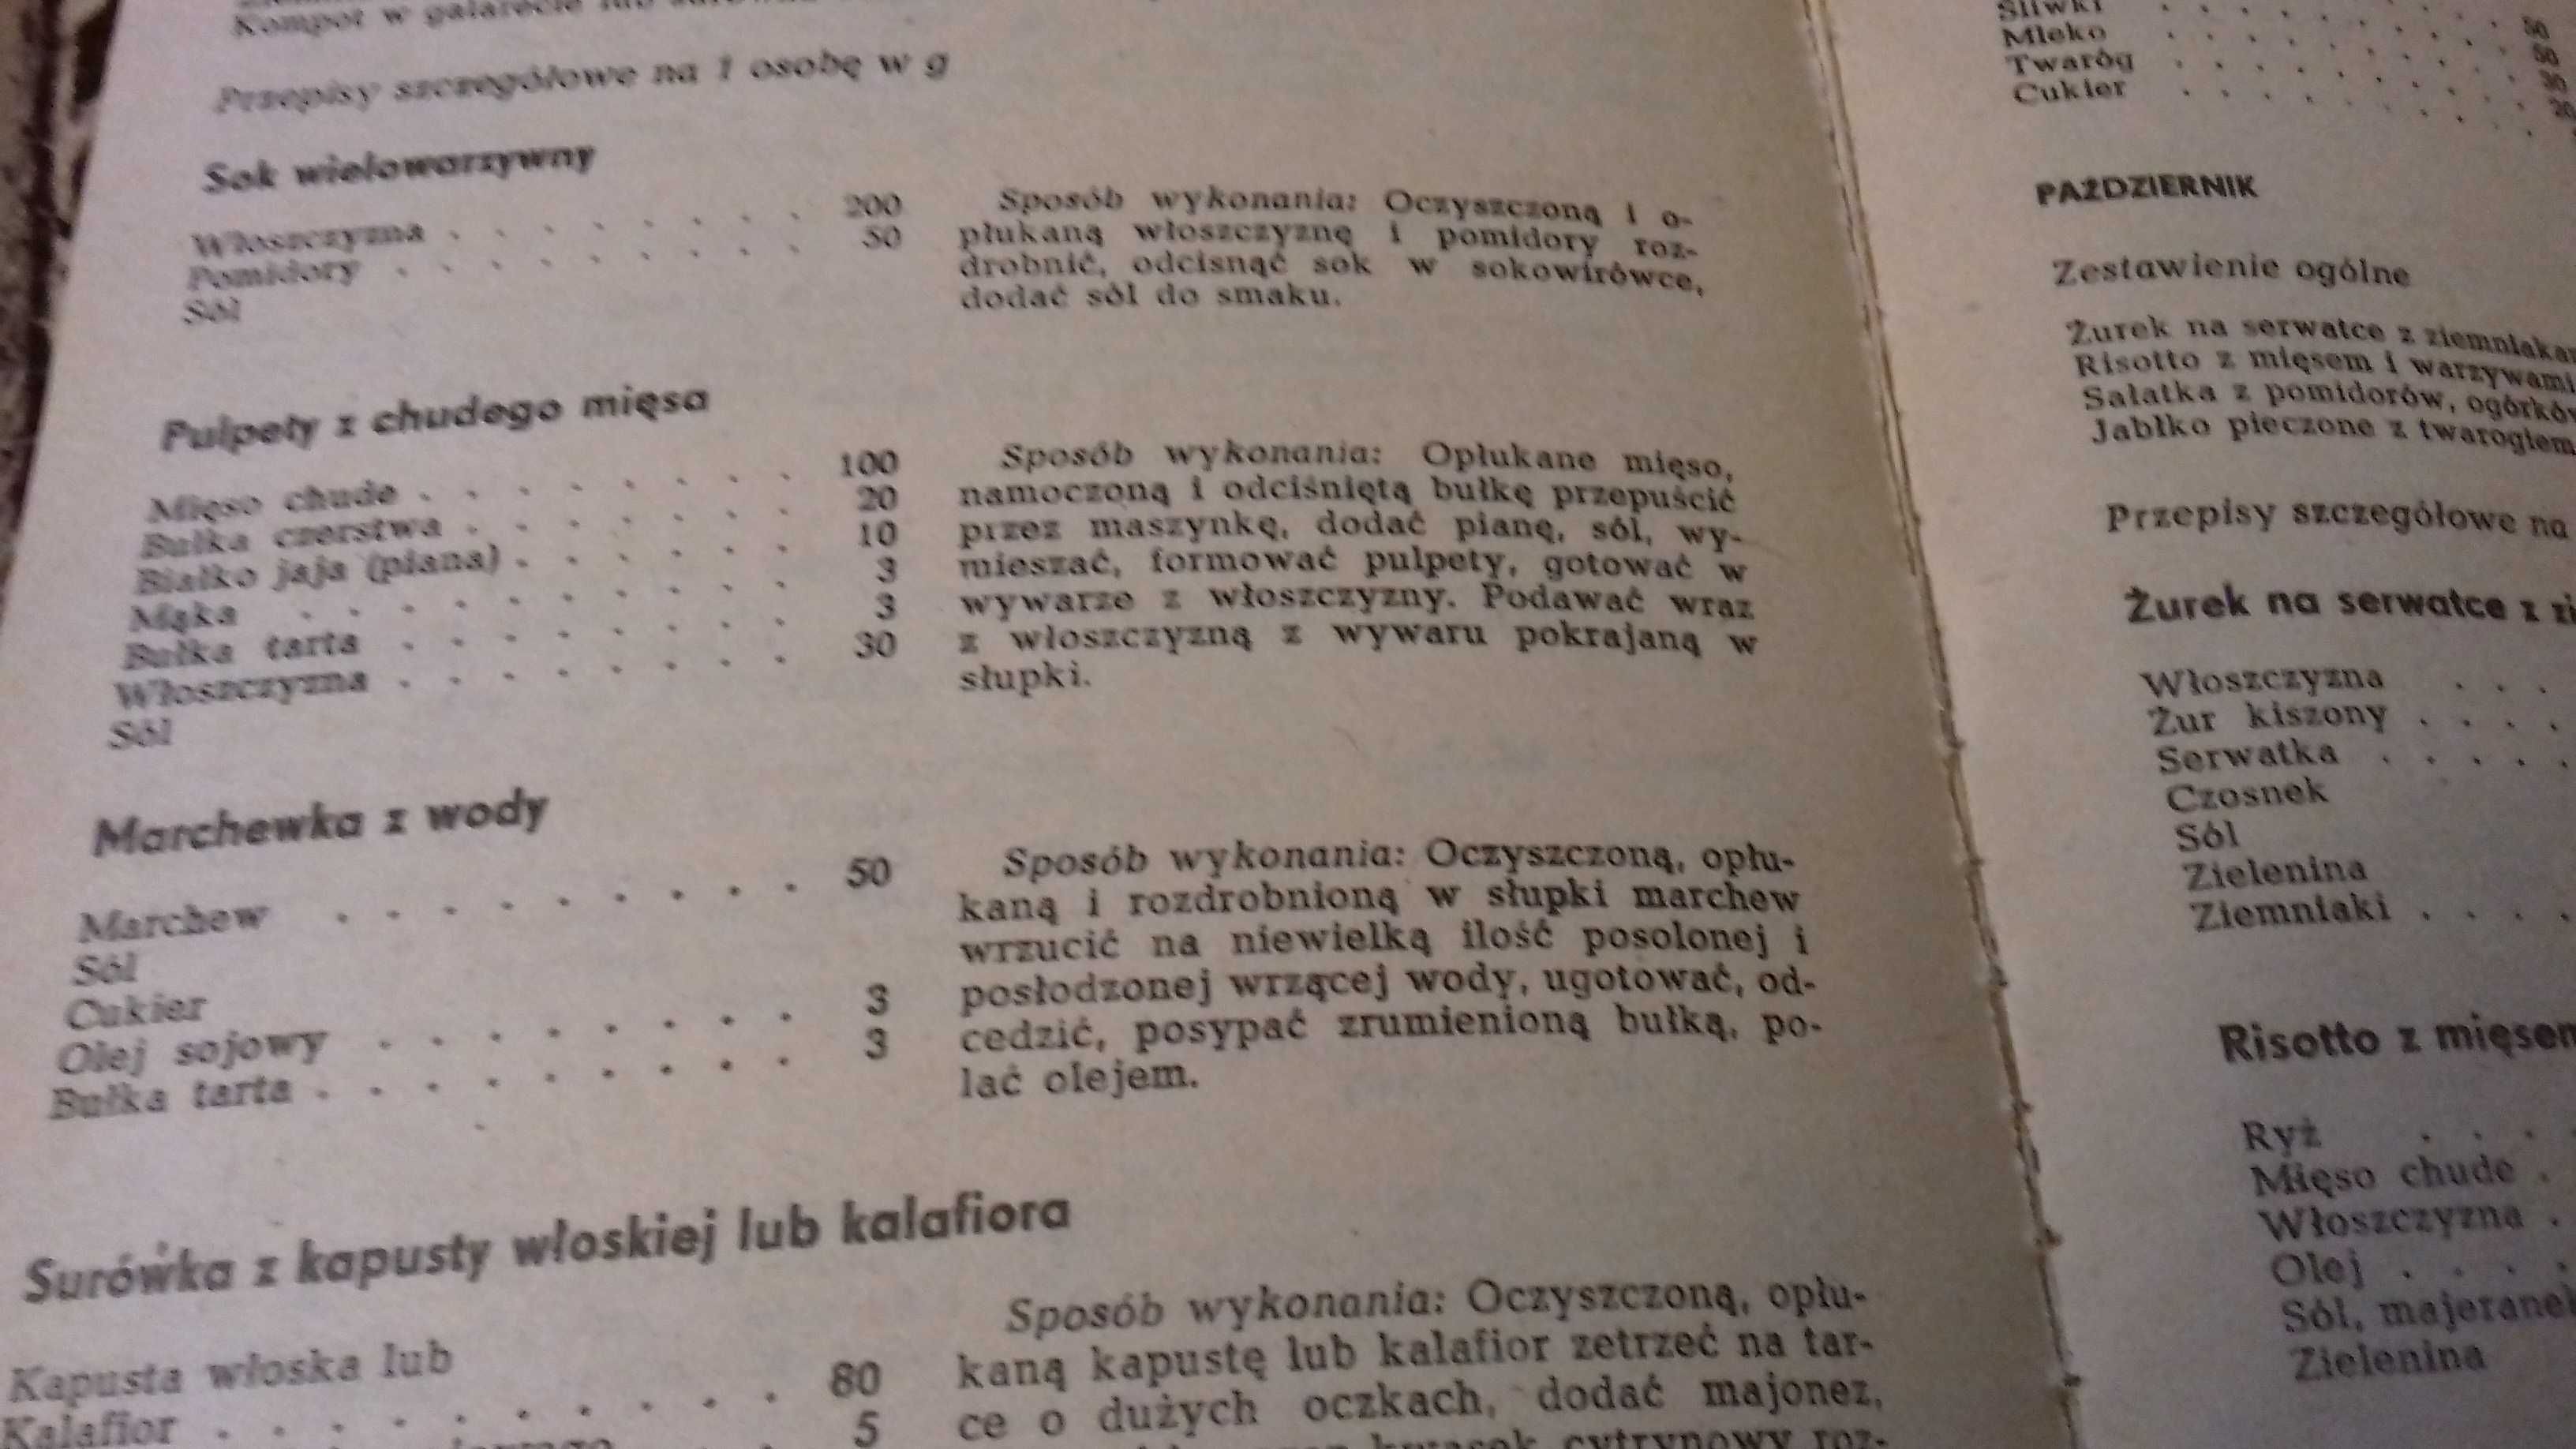 dietetyczna książka kucharska -Z. Wieczorek-Chełmińska  1986 r